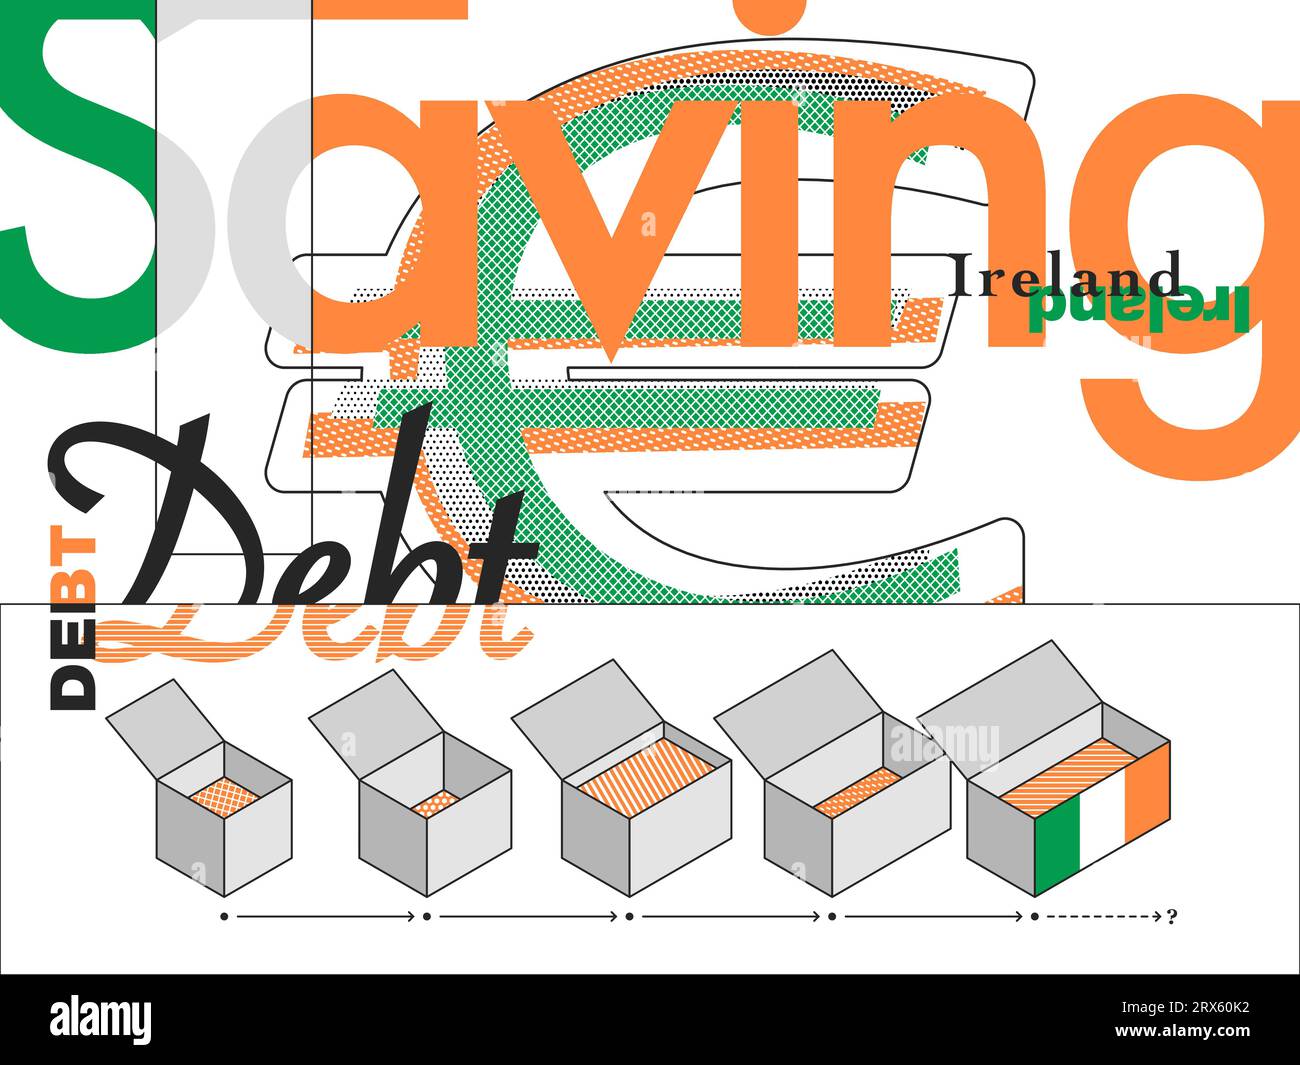 Illustrazione che cattura il debito nazionale irlandese, con simboli e motivi minimalisti. Illustrazione Vettoriale